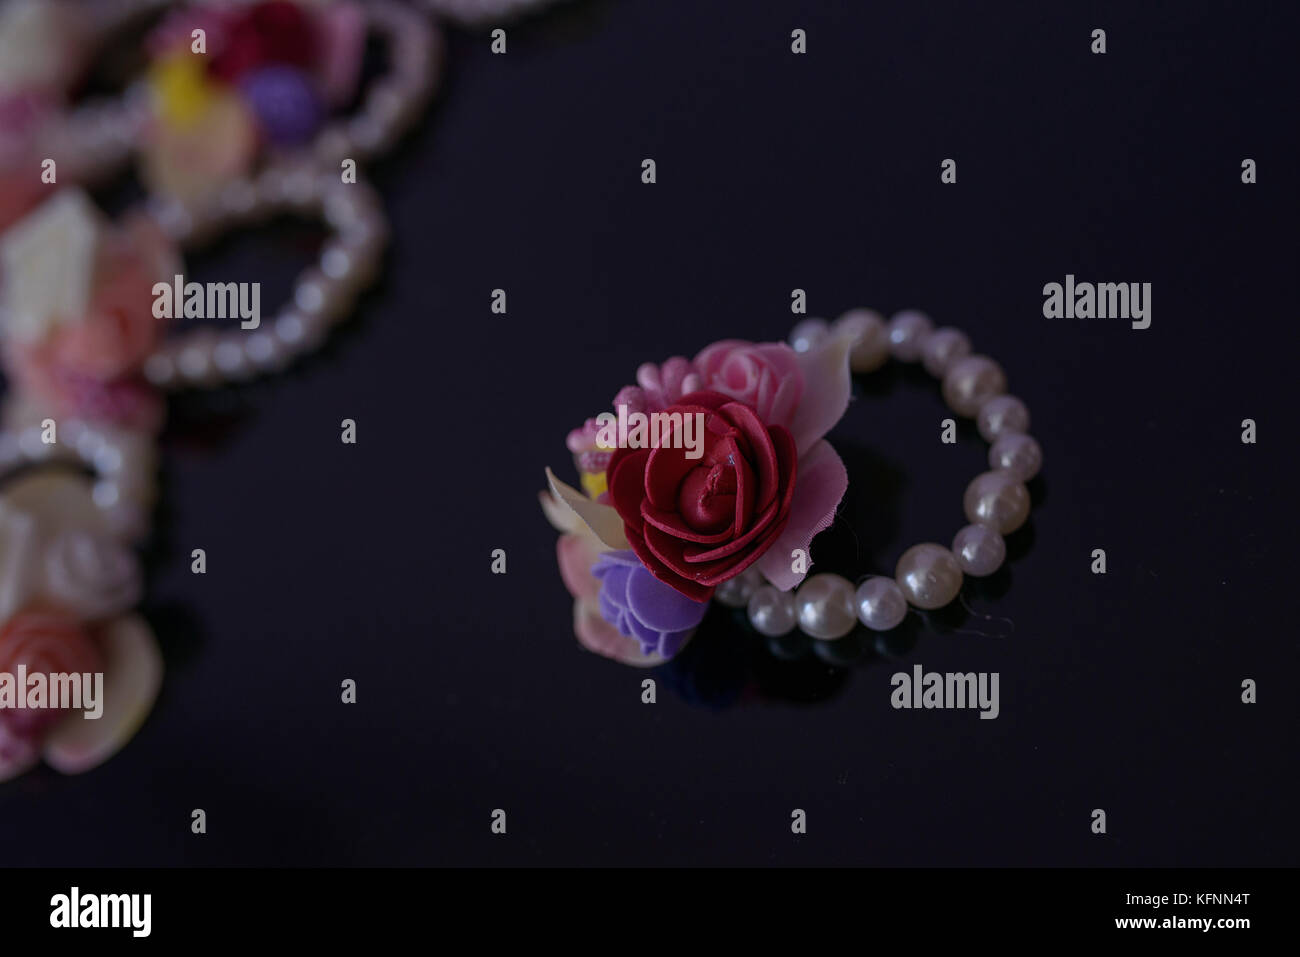 Bracelet avec perles ludiques en cuir et en matière plastique, des ornements floraux sur une surface sombre avec selective focus Banque D'Images